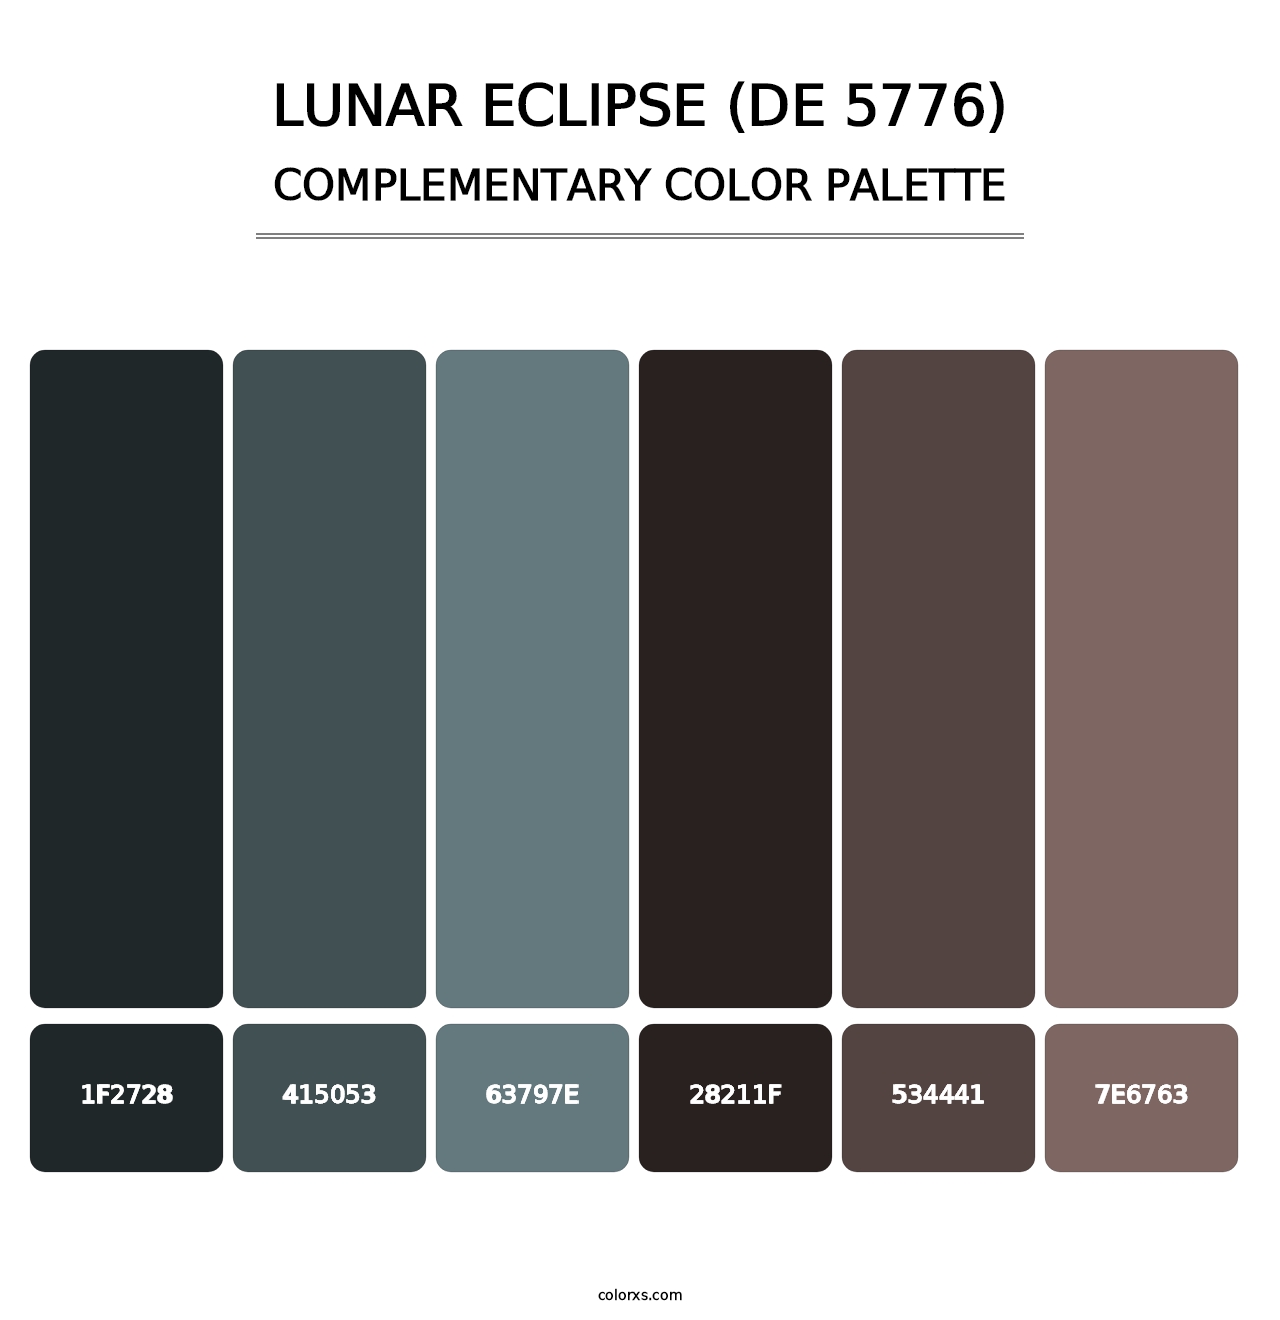 Lunar Eclipse (DE 5776) - Complementary Color Palette